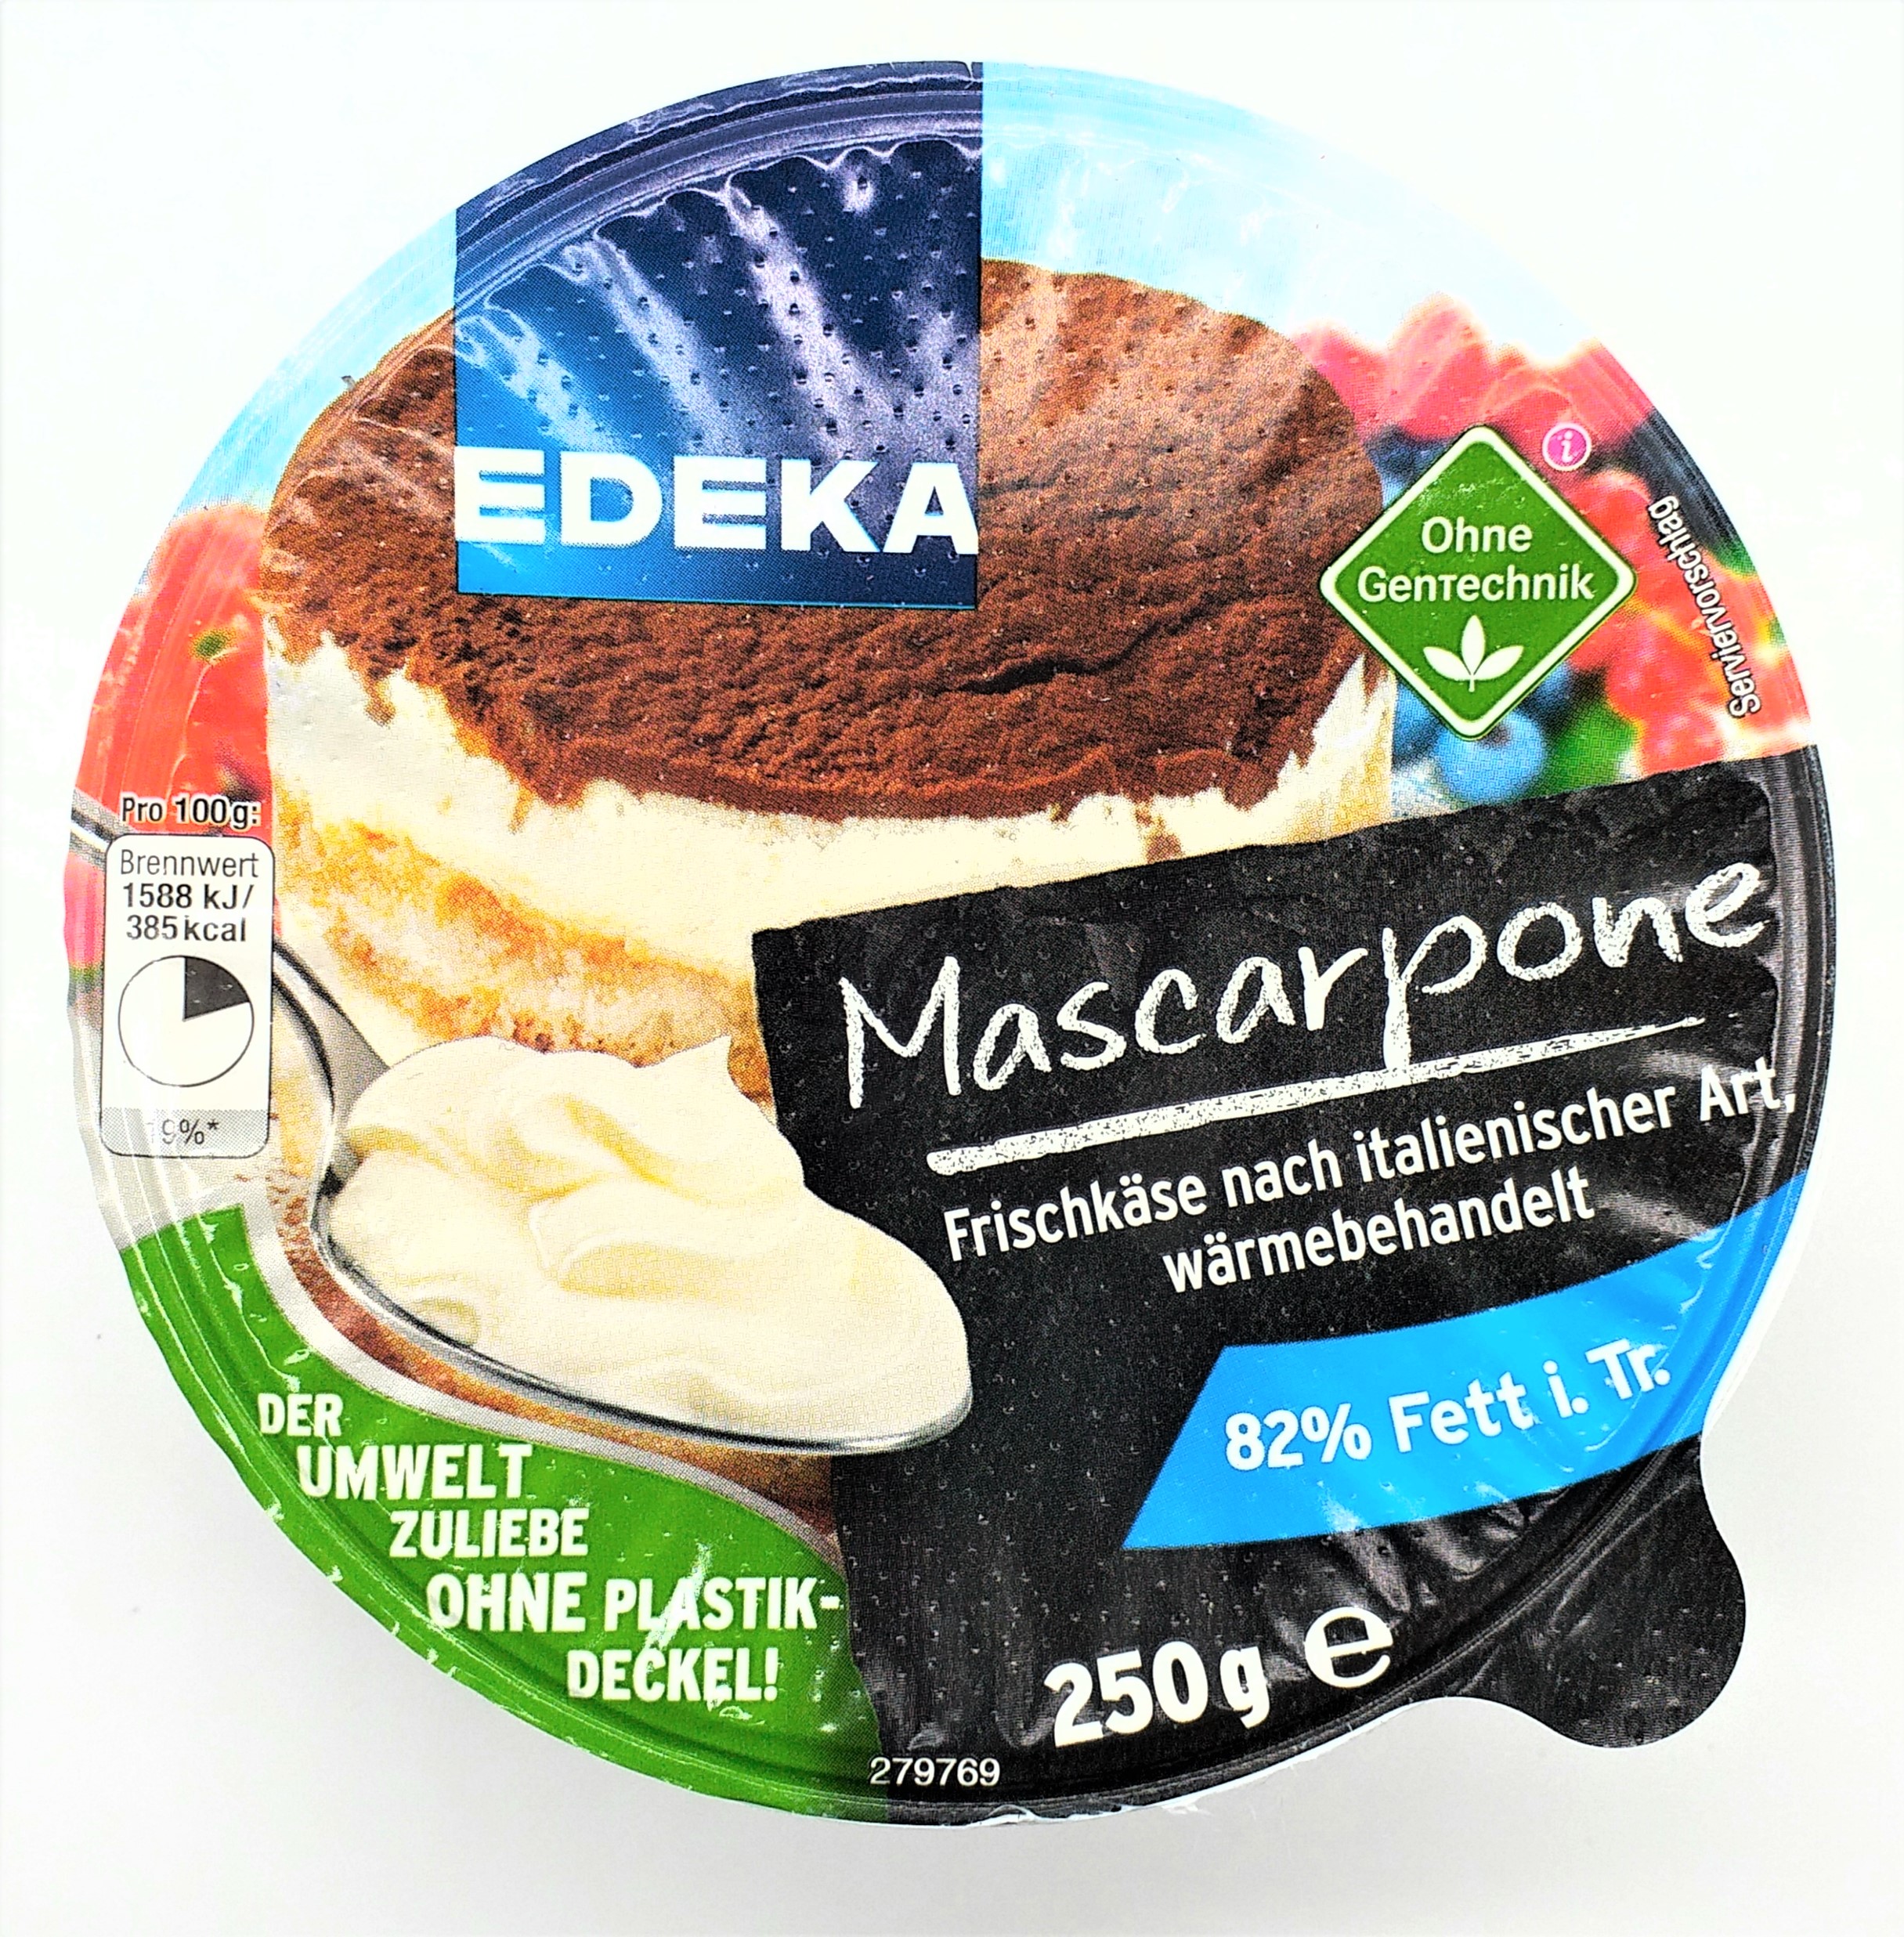 EDEKA Mascarpone 82% Fett i. Tr. 250g